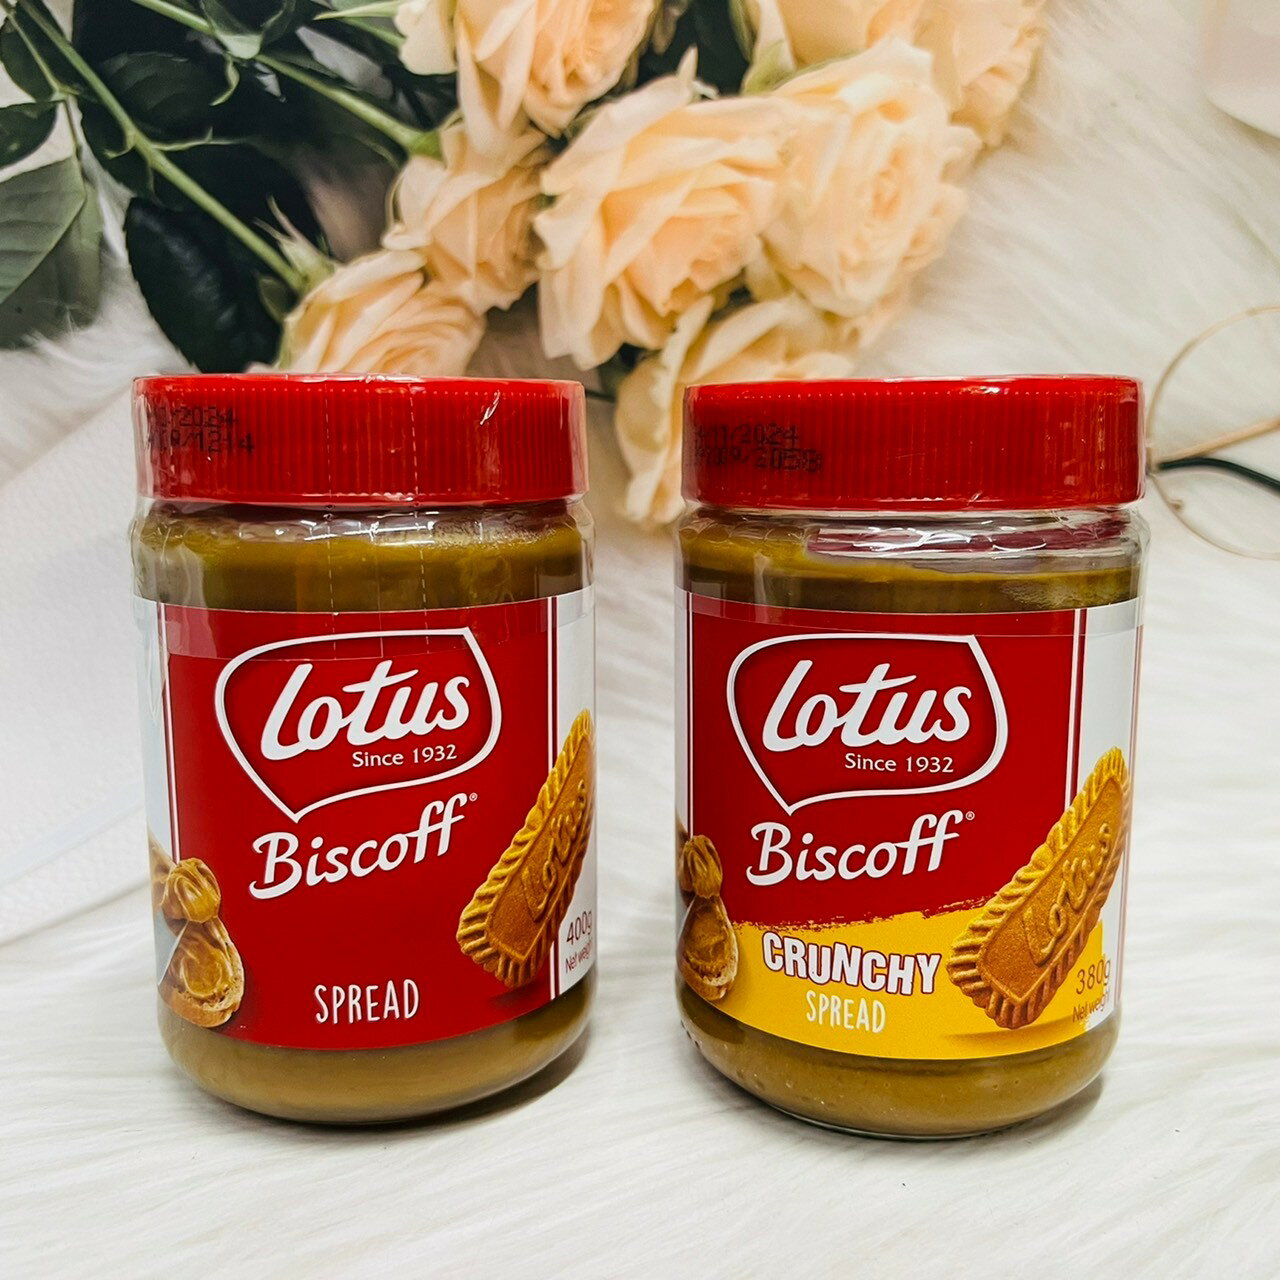 Lotus Biscoff Spread 比利時 蓮花抹醬 香滑脆粒 抹醬 早餐抹醬 吐司抹醬